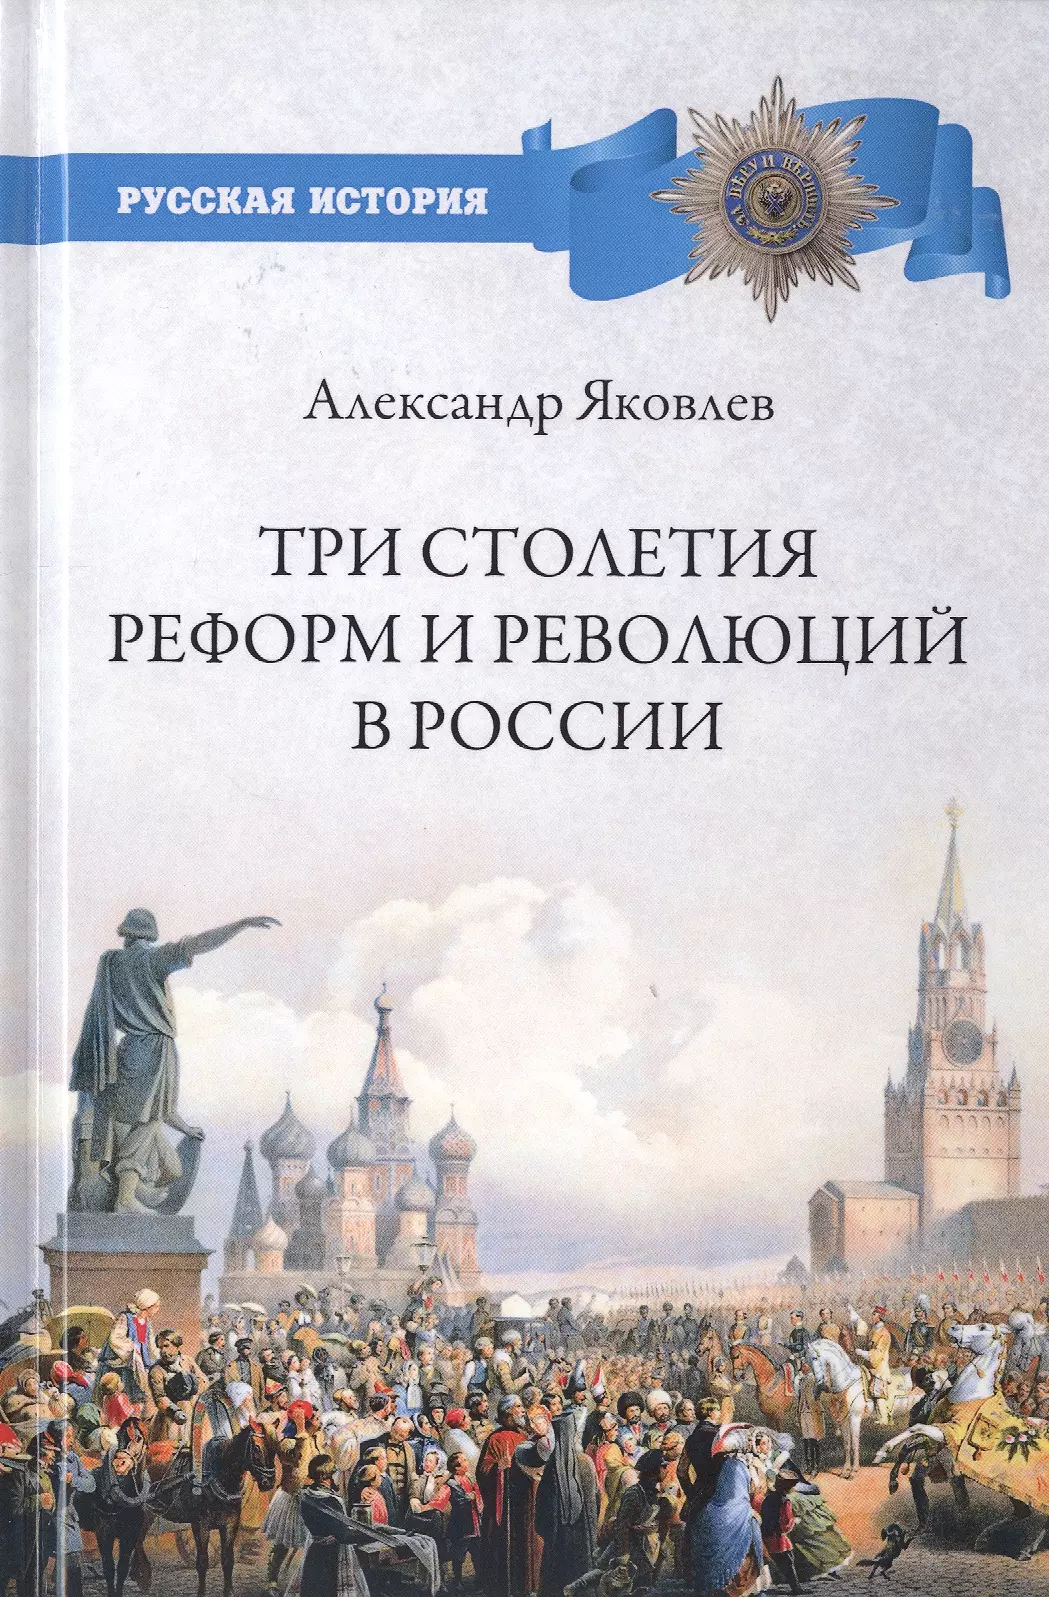 Яковлев Александр Иванович - Три столетия реформ и революций в России